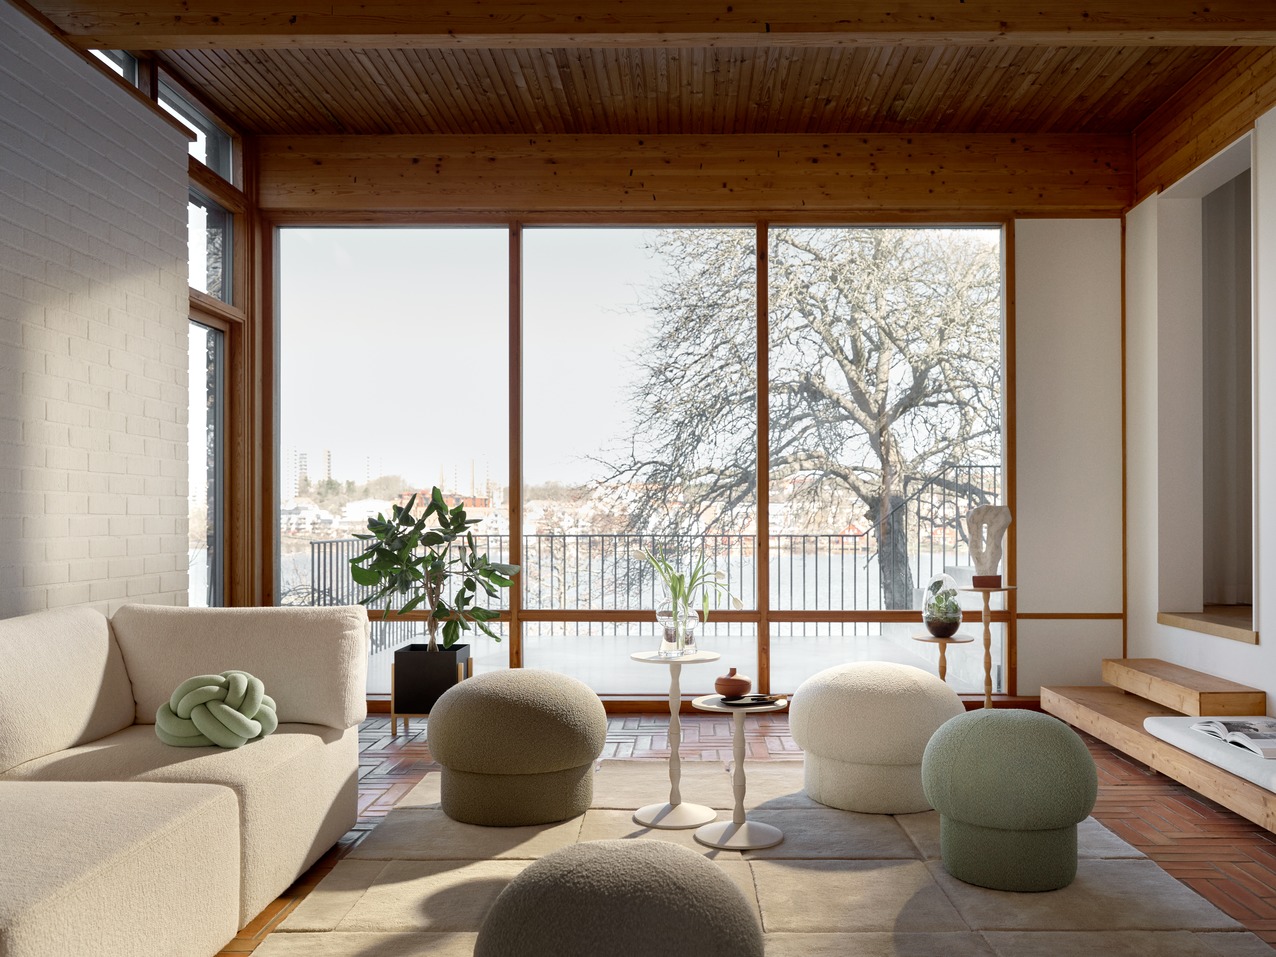 Uno Pouf design by Claesson Koivisto Rune – Design House Stockholm 